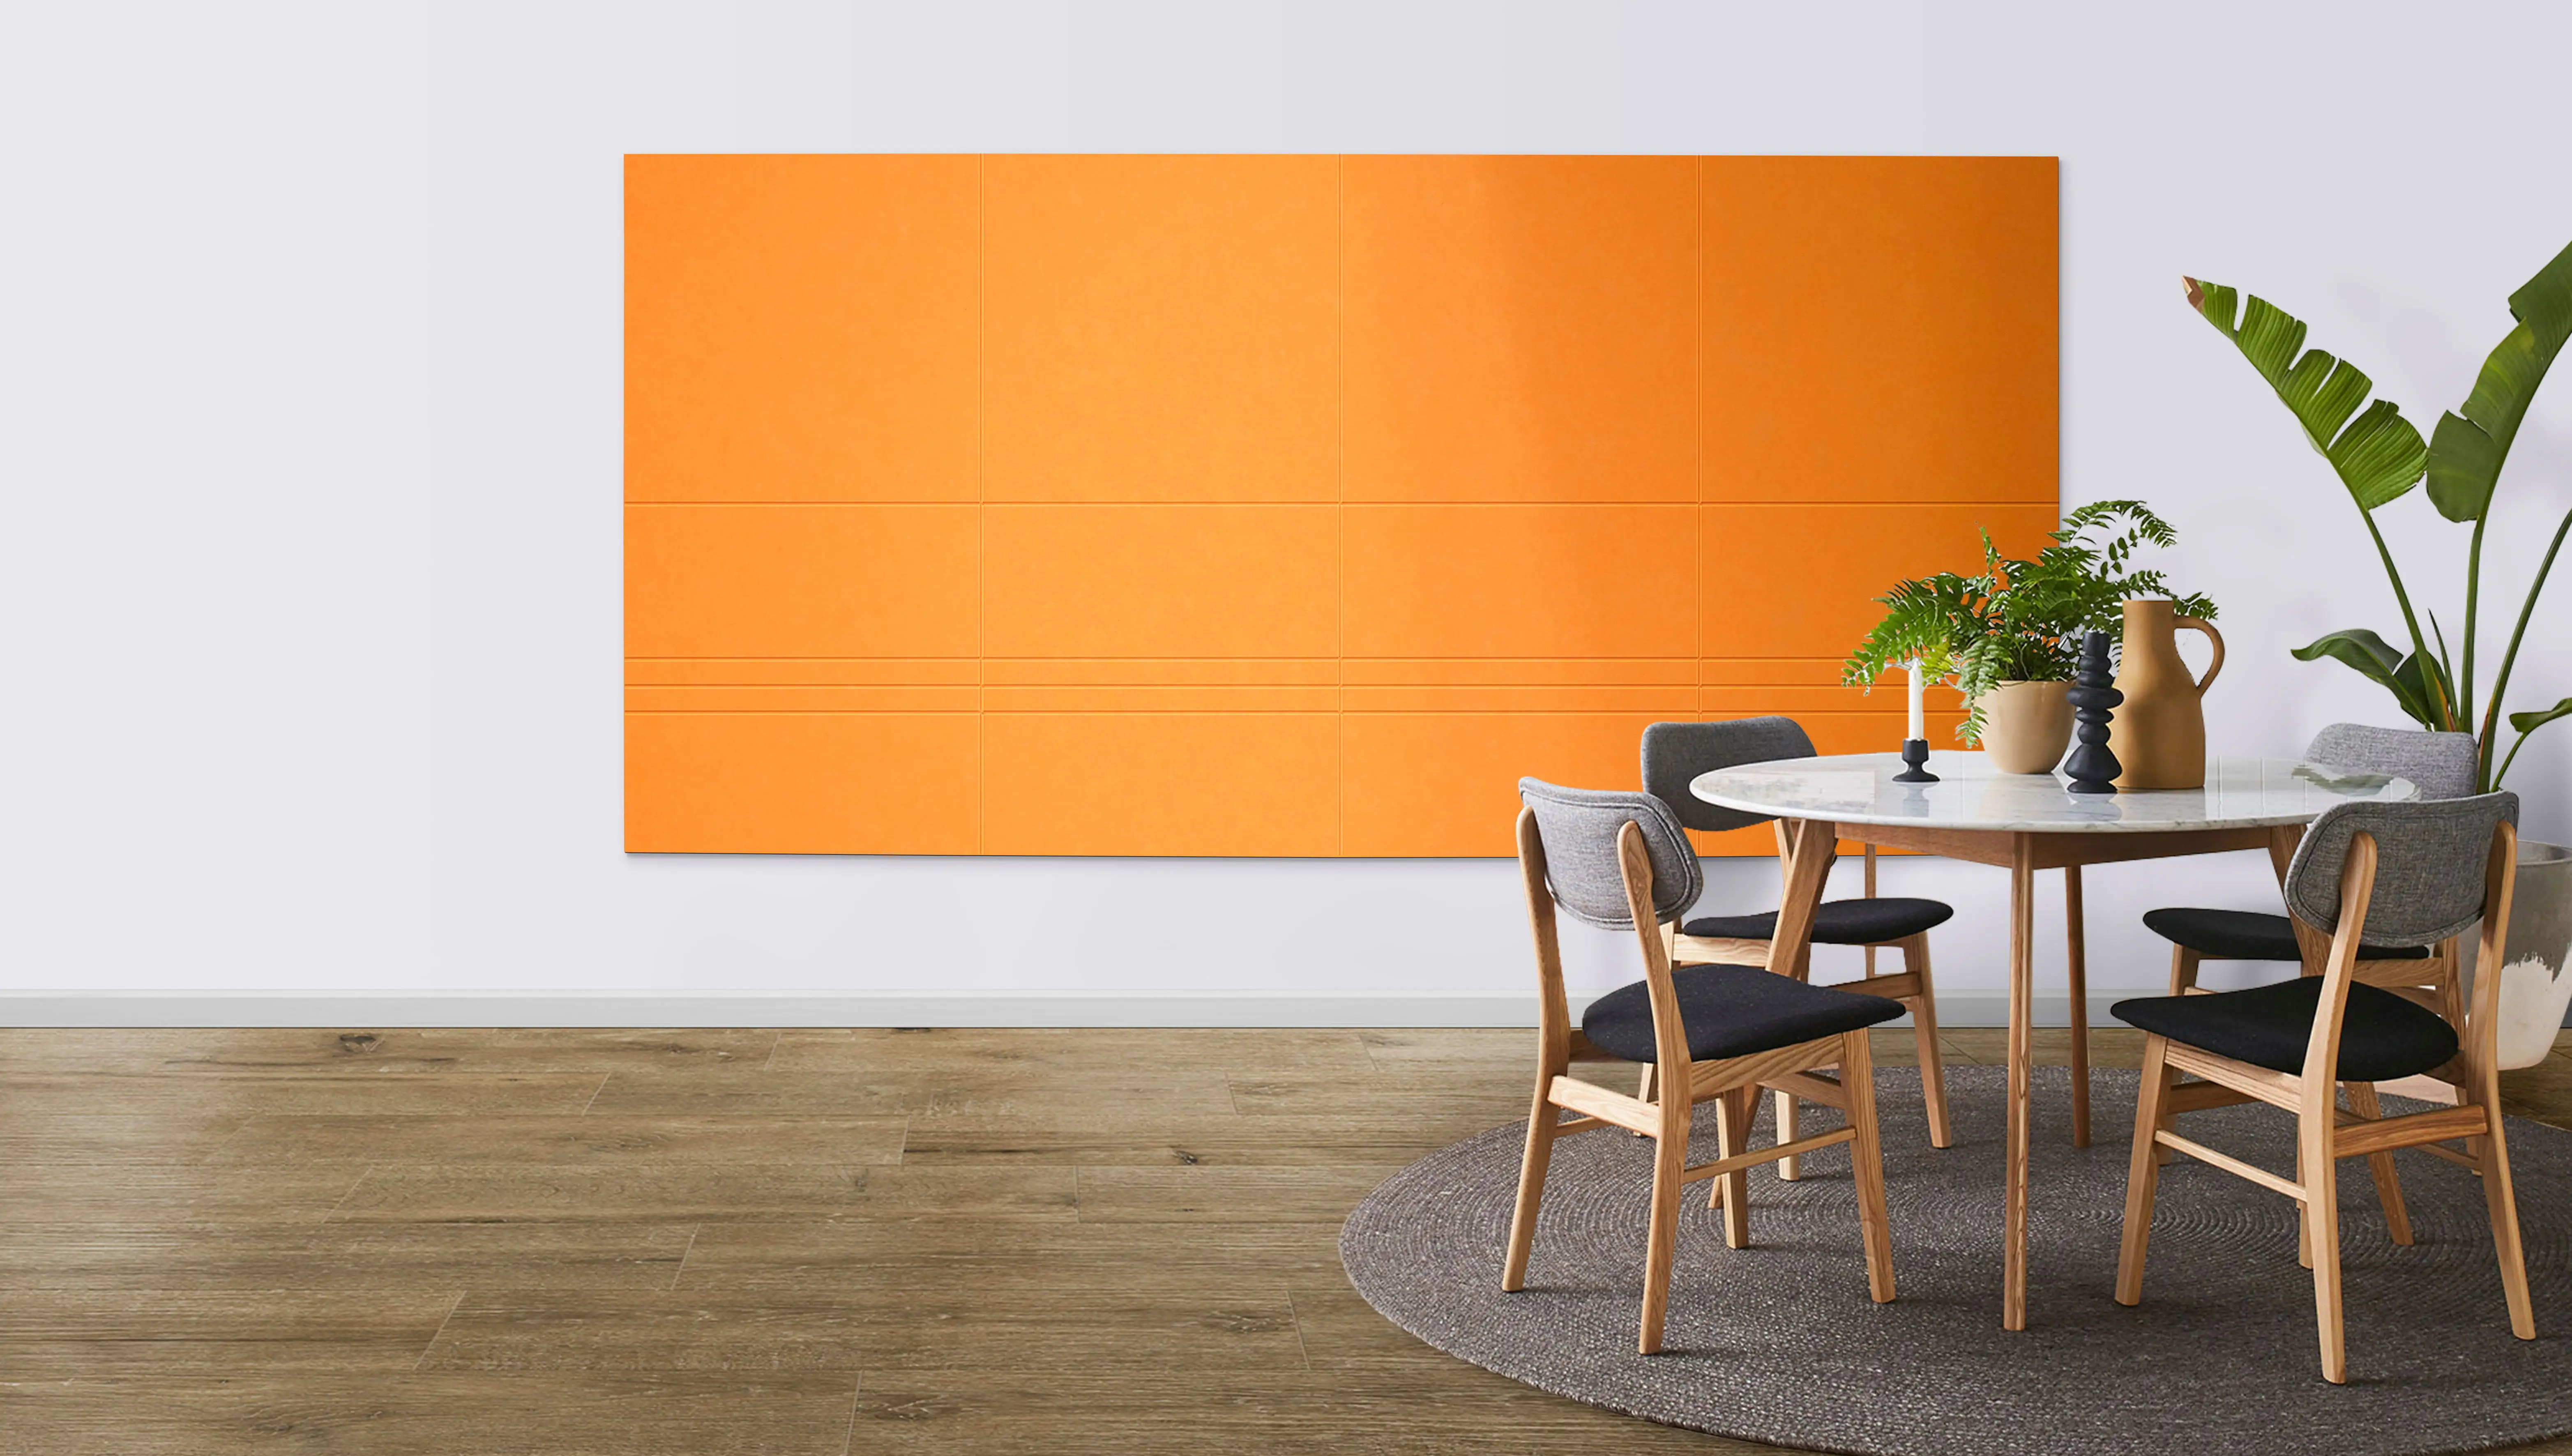 Sıcak satış PET Polyester akustik duvar panelleri renkli yeni tasarım duvar panelleri ev içi dekorasyon